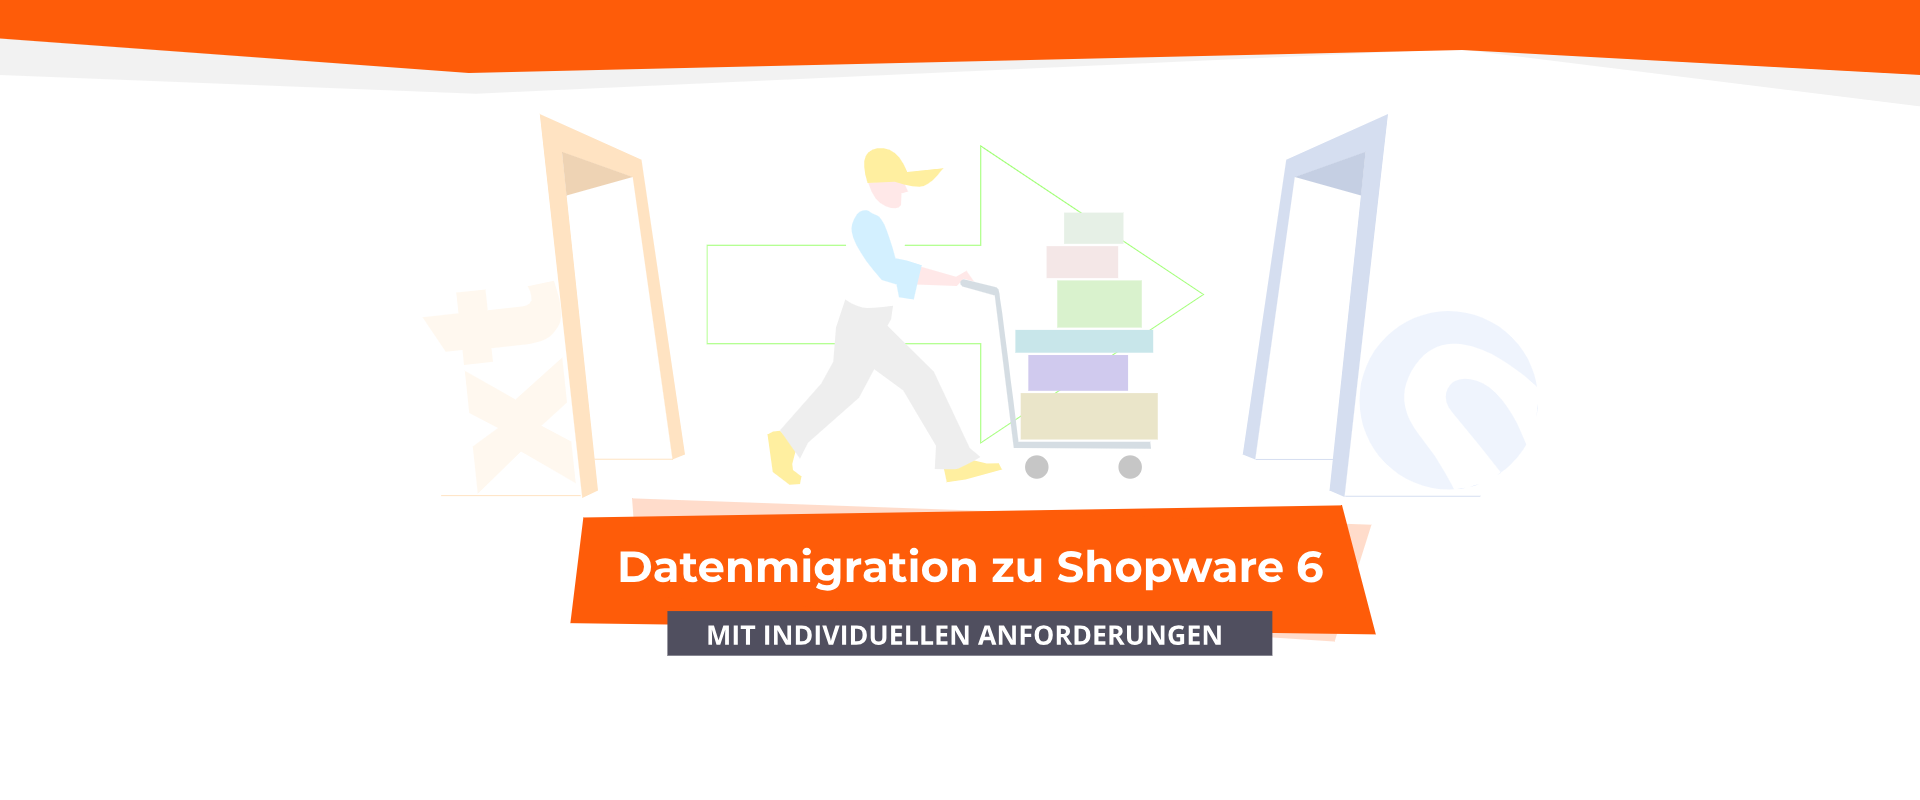 Datenmigration zu Shopware 6 – mit individuellen Anforderungen